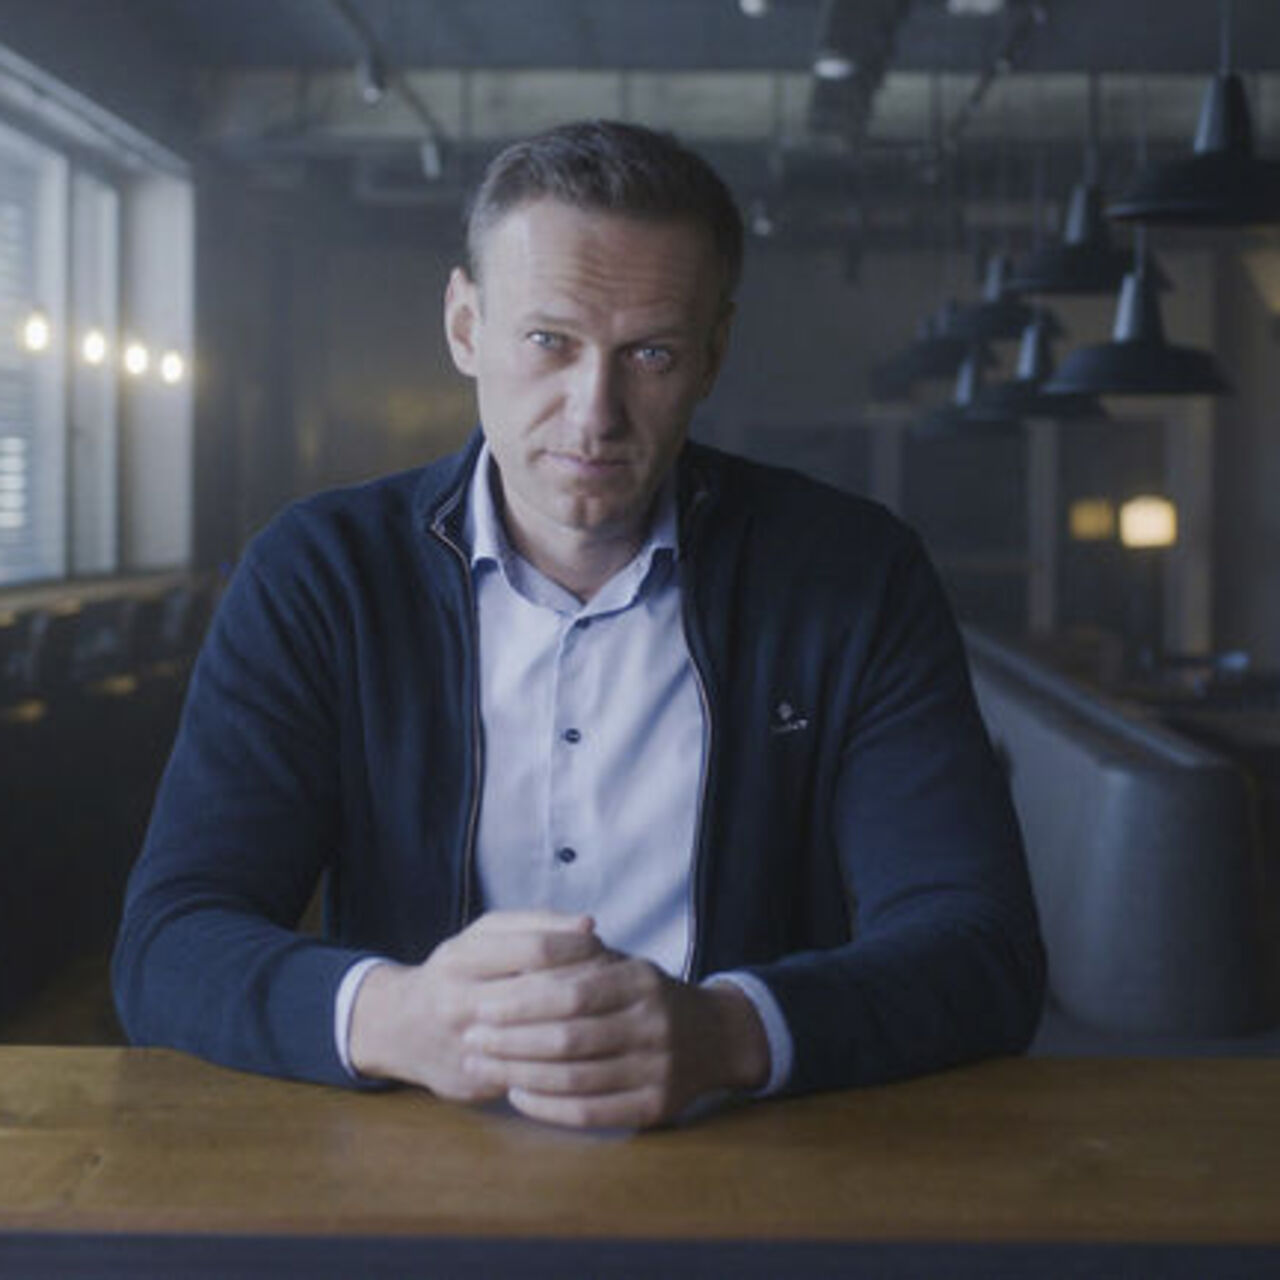 "Rusya, Navalny'nin cenazesini teslim etmiyor"